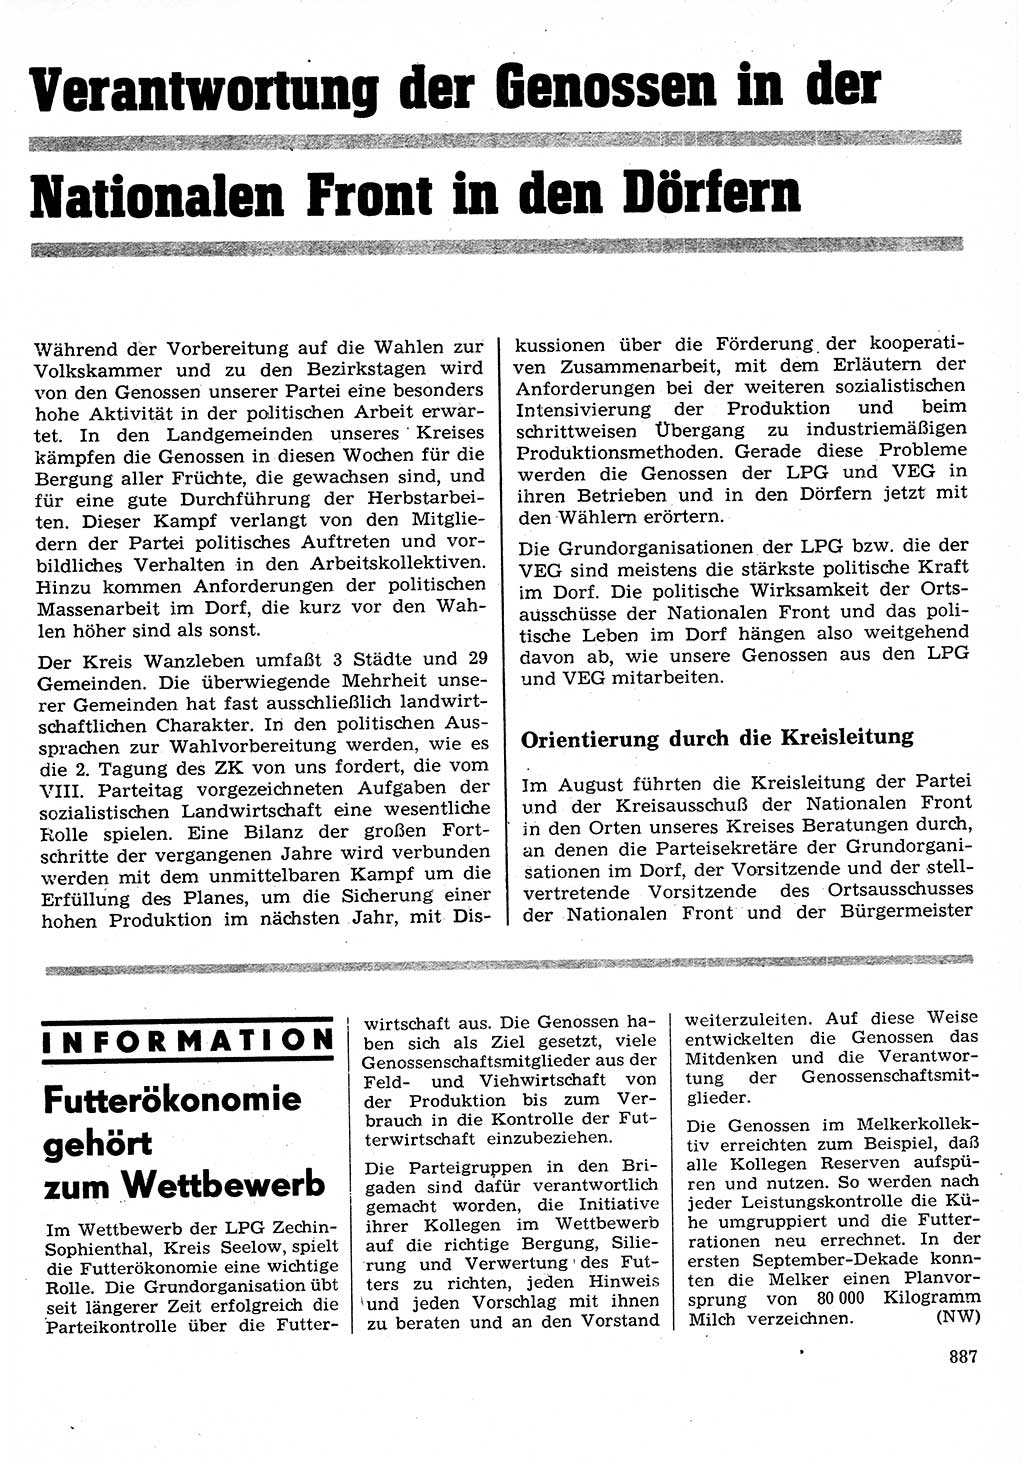 Neuer Weg (NW), Organ des Zentralkomitees (ZK) der SED (Sozialistische Einheitspartei Deutschlands) für Fragen des Parteilebens, 26. Jahrgang [Deutsche Demokratische Republik (DDR)] 1971, Seite 887 (NW ZK SED DDR 1971, S. 887)